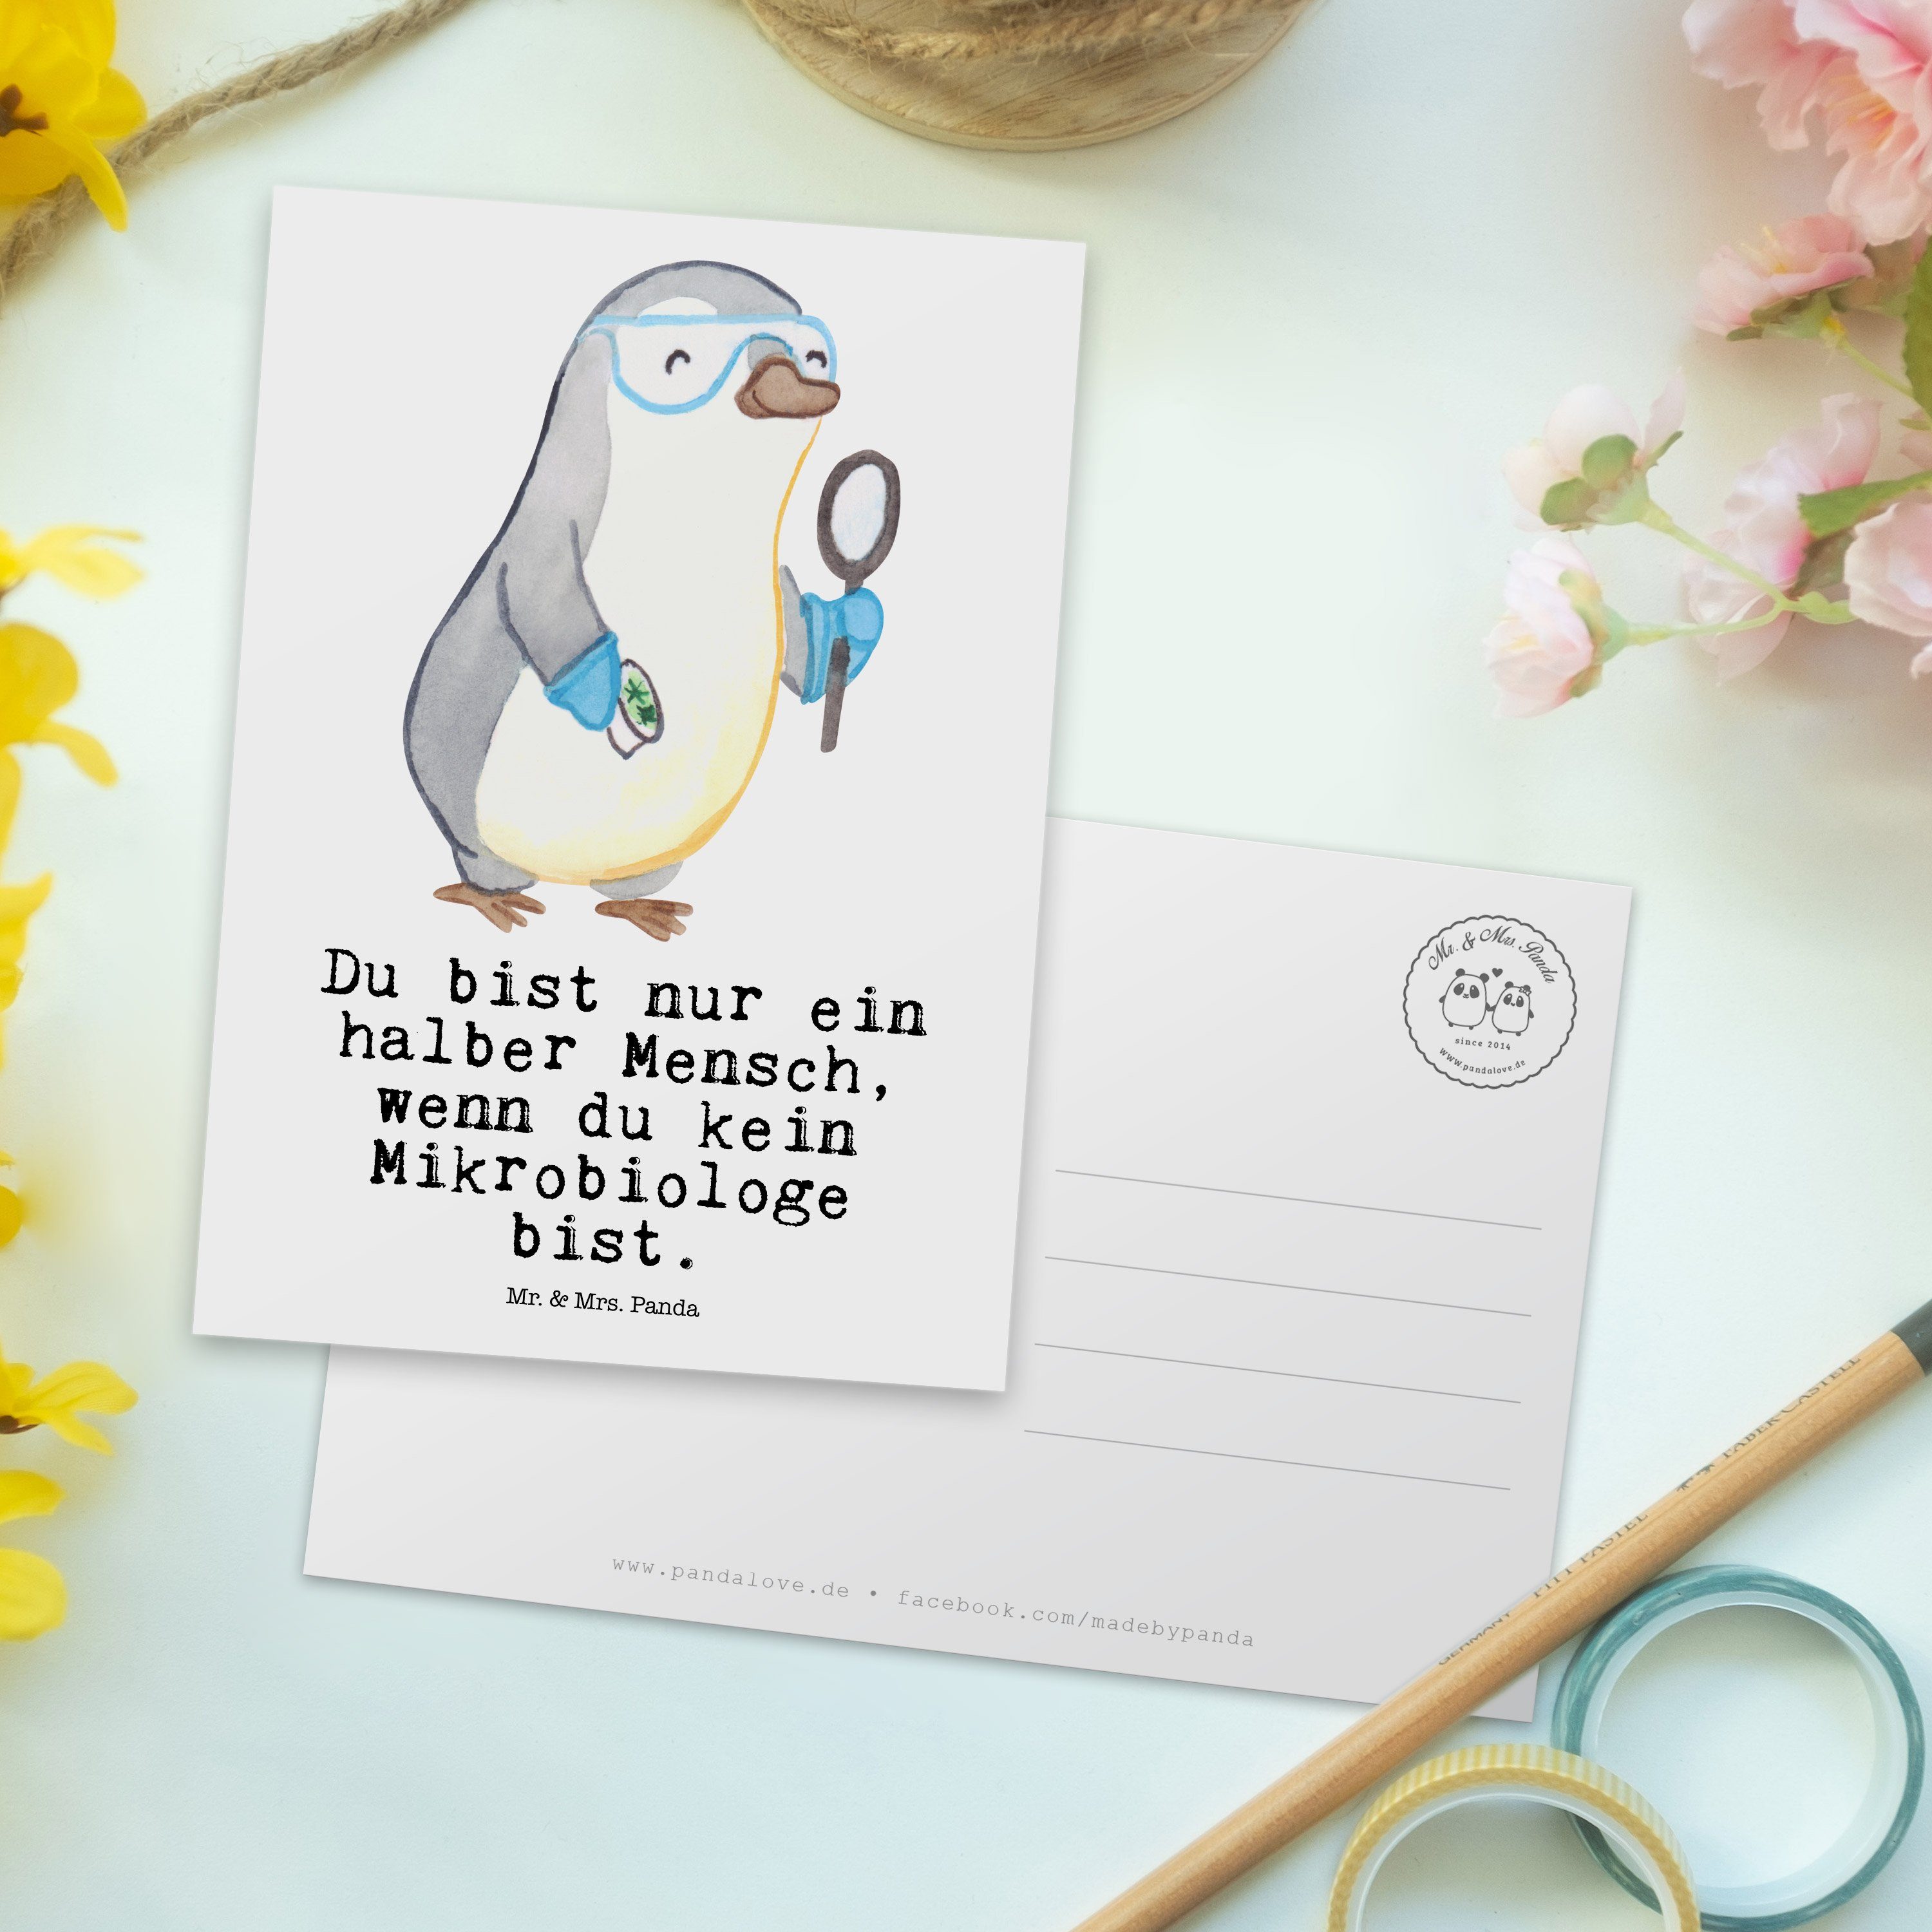 Weiß Mrs. Grußkarte, mit Arbeitskol - Postkarte & Mikrobiologe Labor, Mr. Panda - Herz Geschenk,